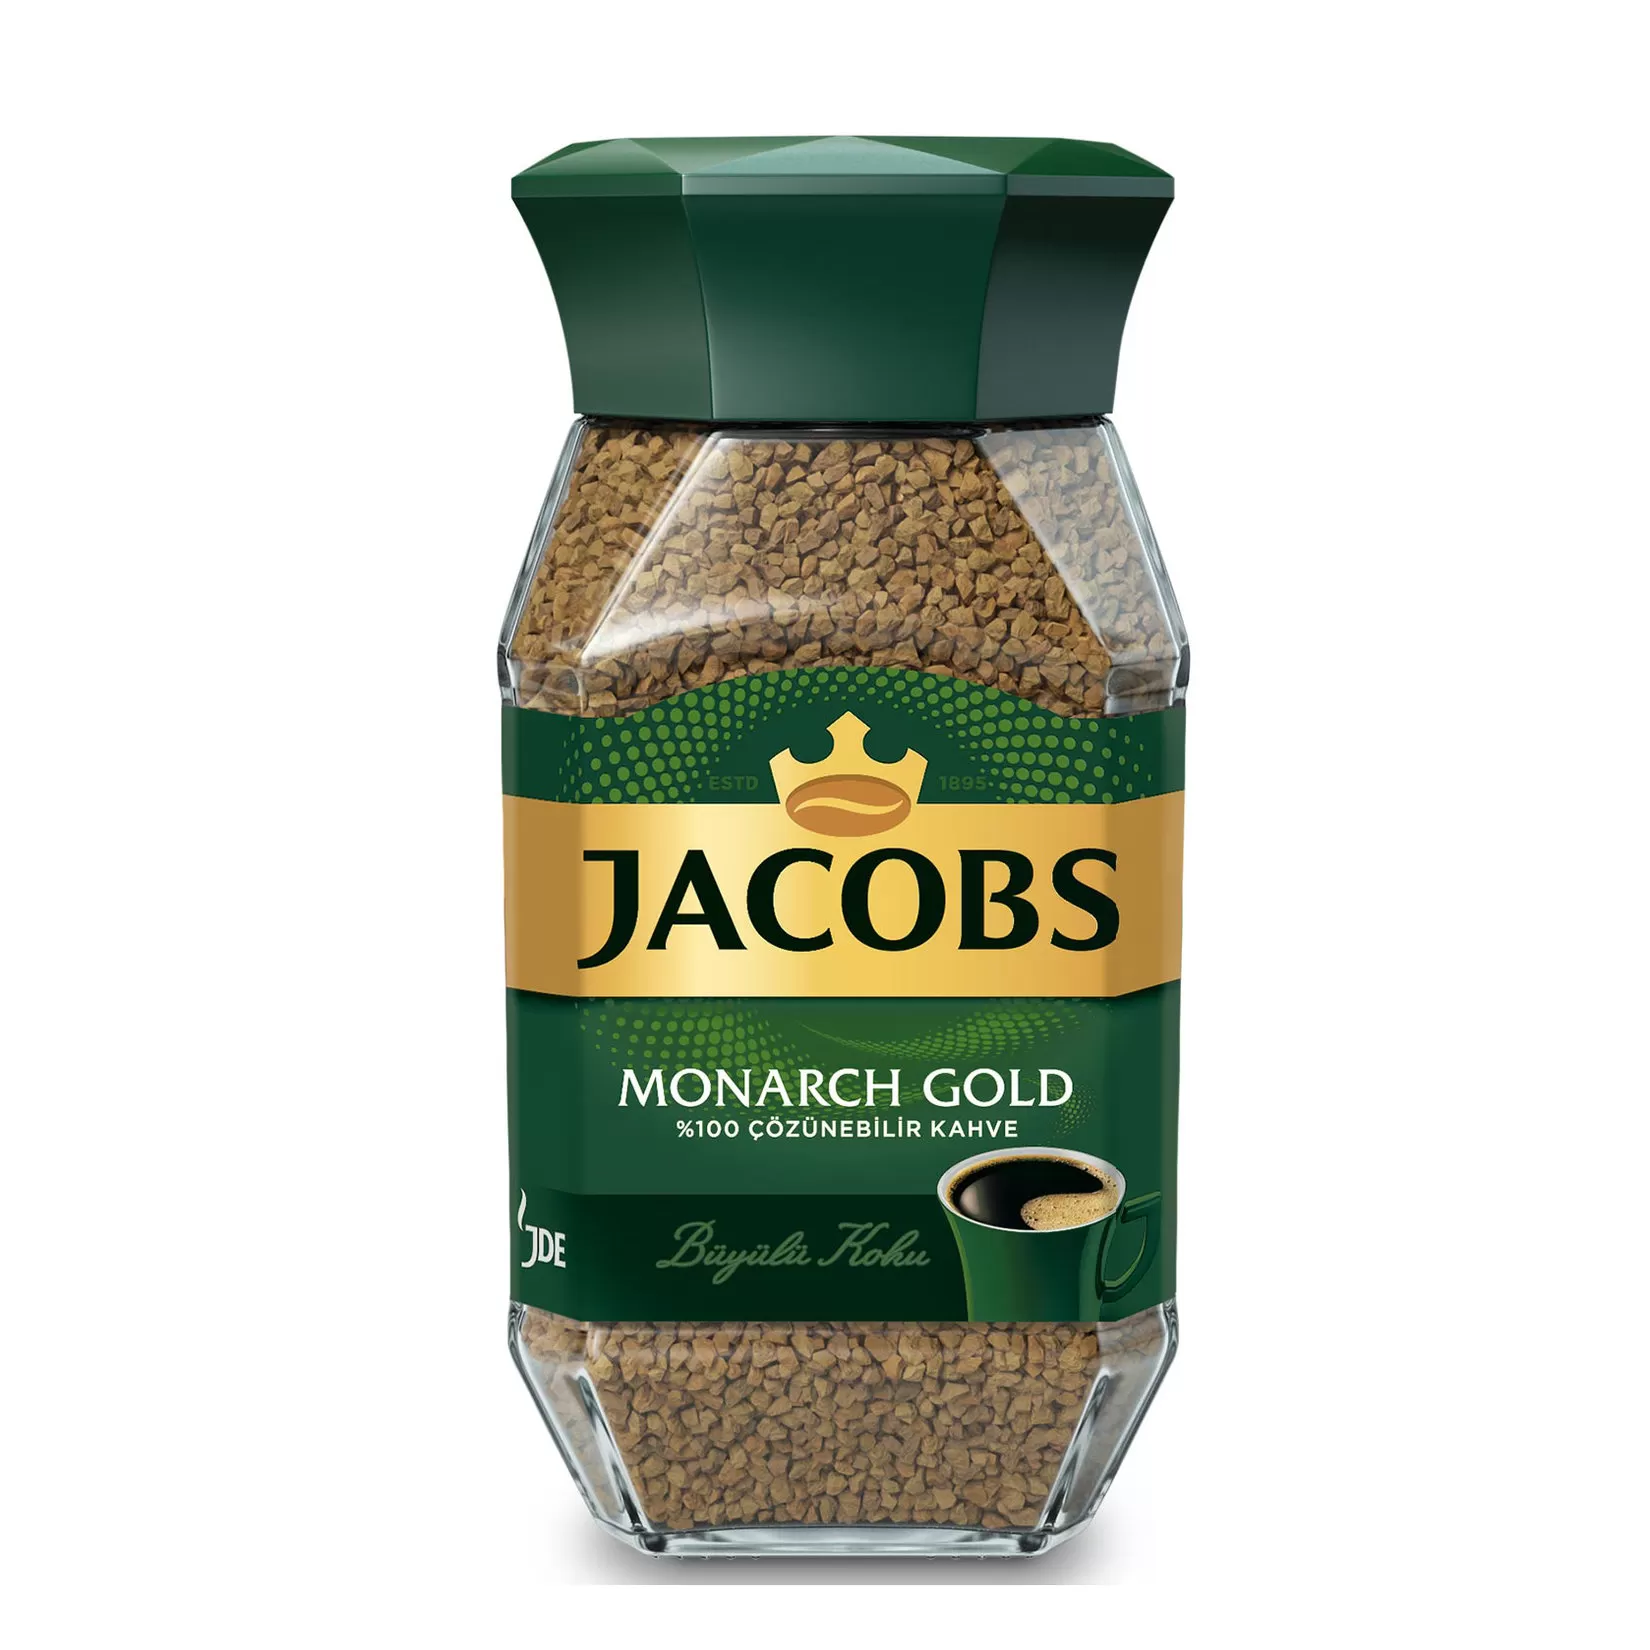 Jacobs Monarch Gold Kahve 100 gr Kavonoz